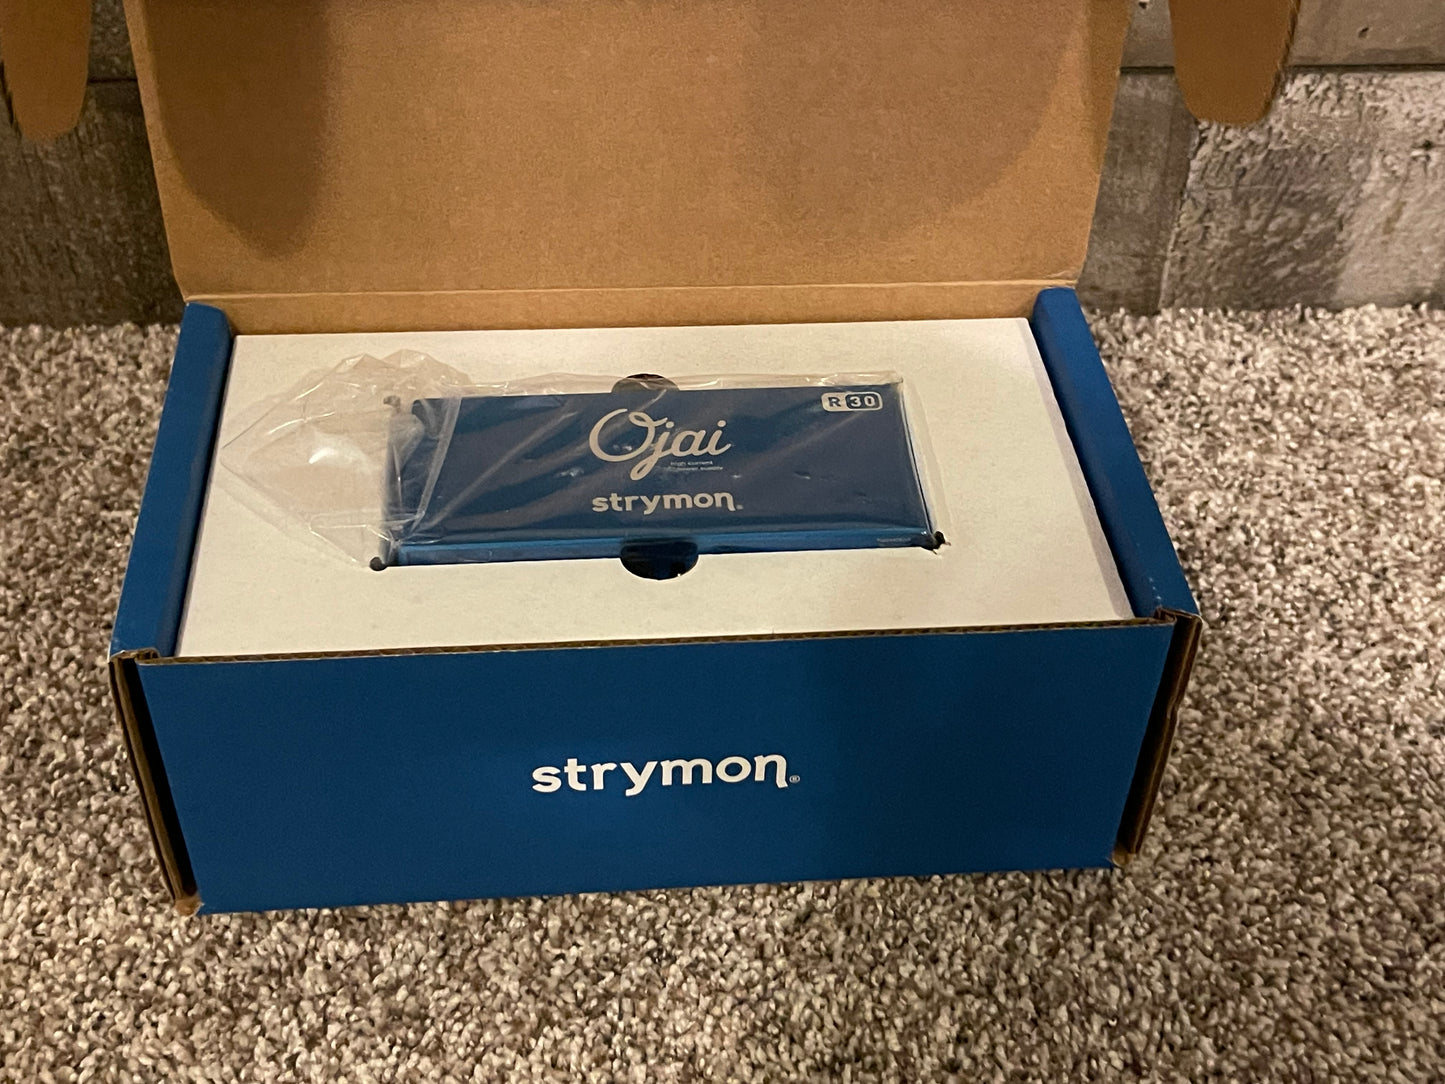 Strymon Ojai R30 Power Supply Expansion Kit